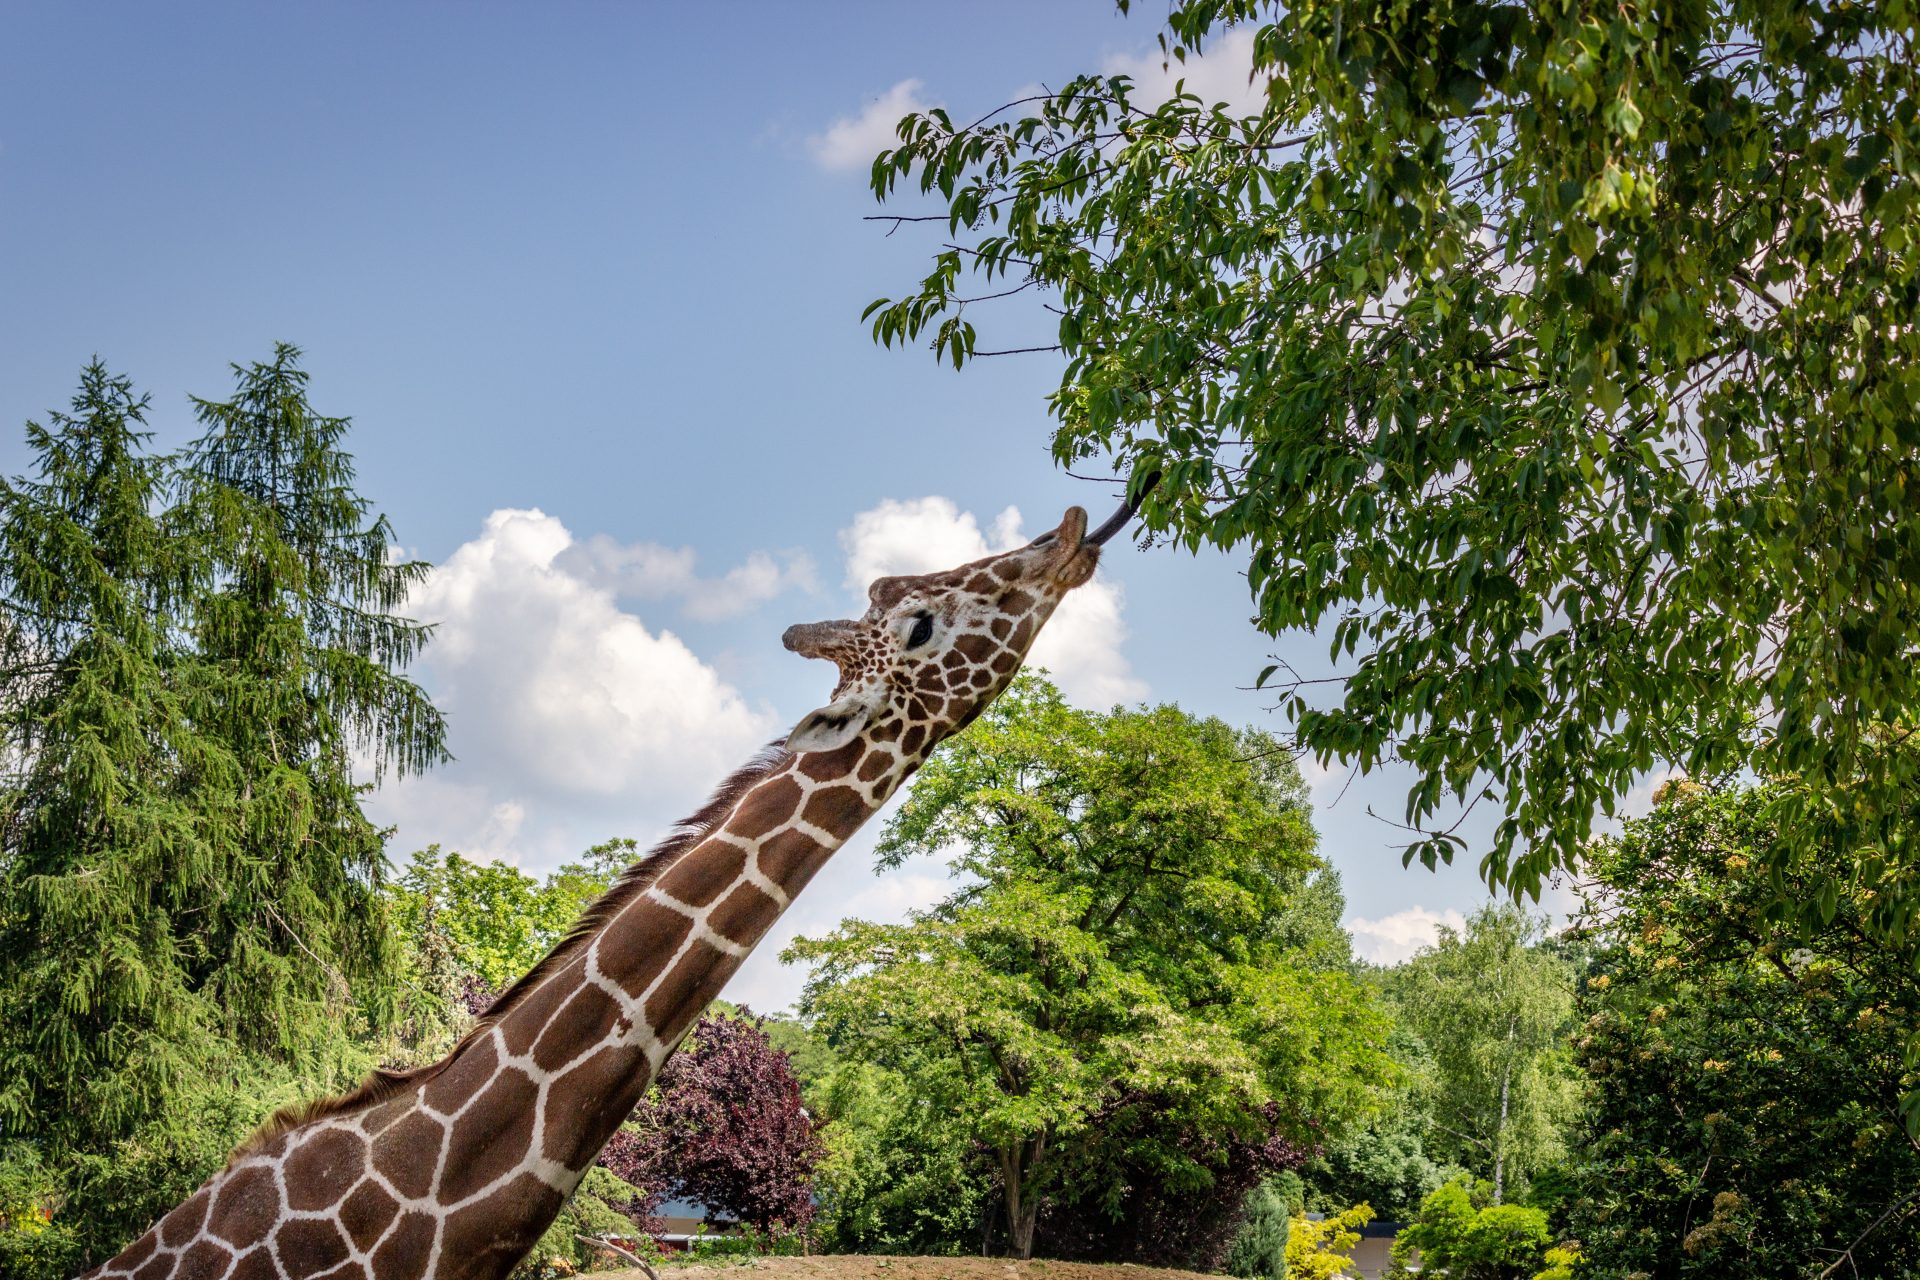 It’s not only giraffes going through a “silent extinction”